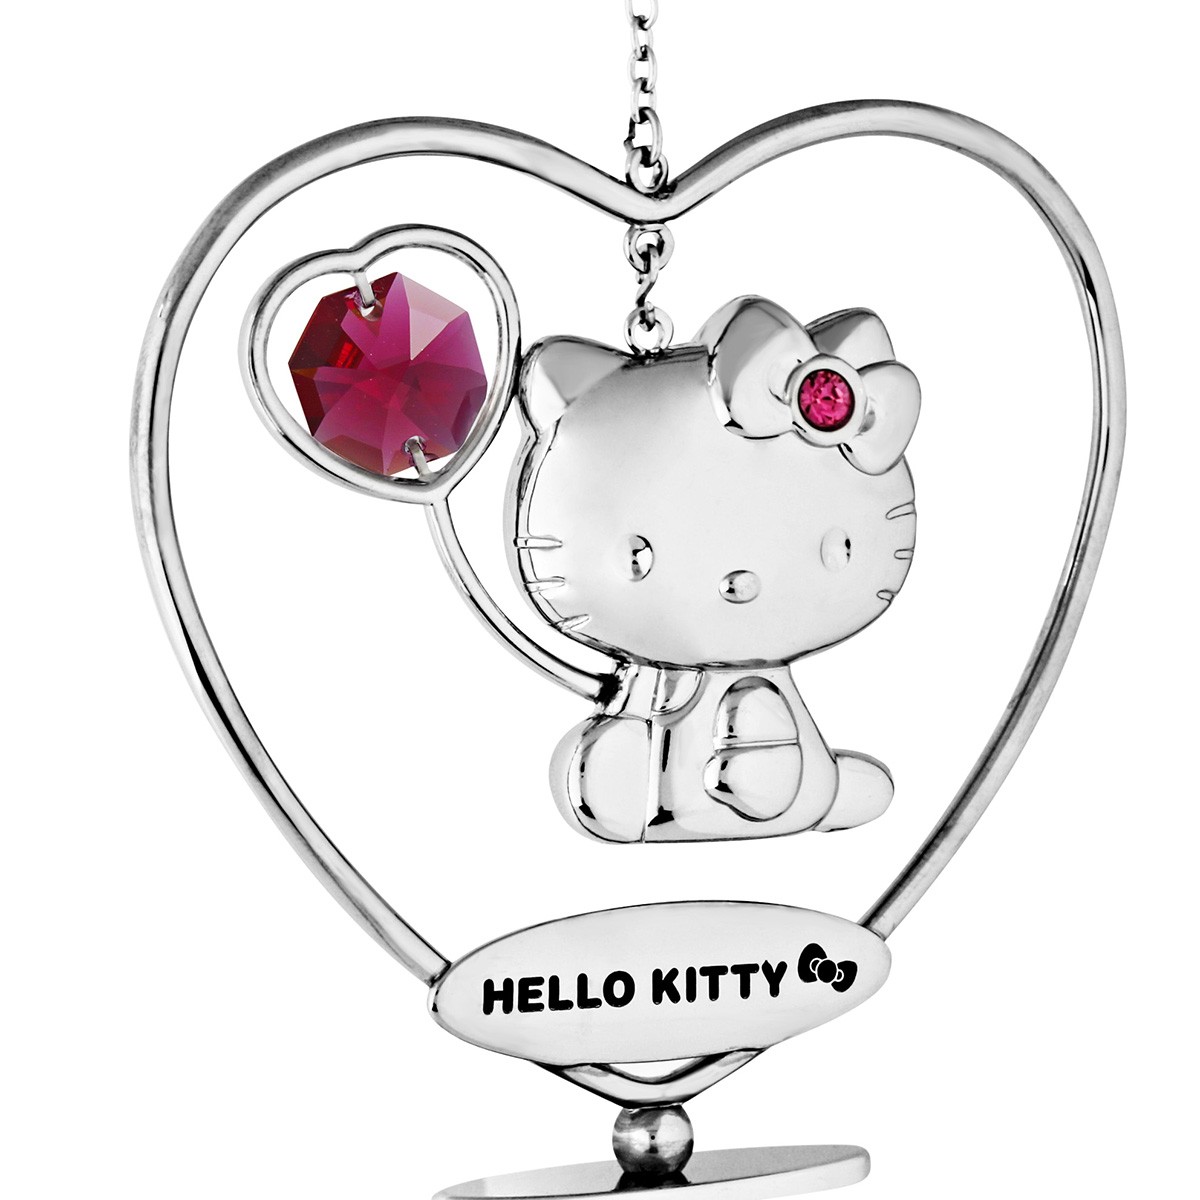 スワロフスキー クリスタル キティちゃん 誕生日 プレゼント ギフト 女性 hello kitty ハローキティ ウインドチャイム 1 :hellokitty-3-1:アンドロメダ - 通販